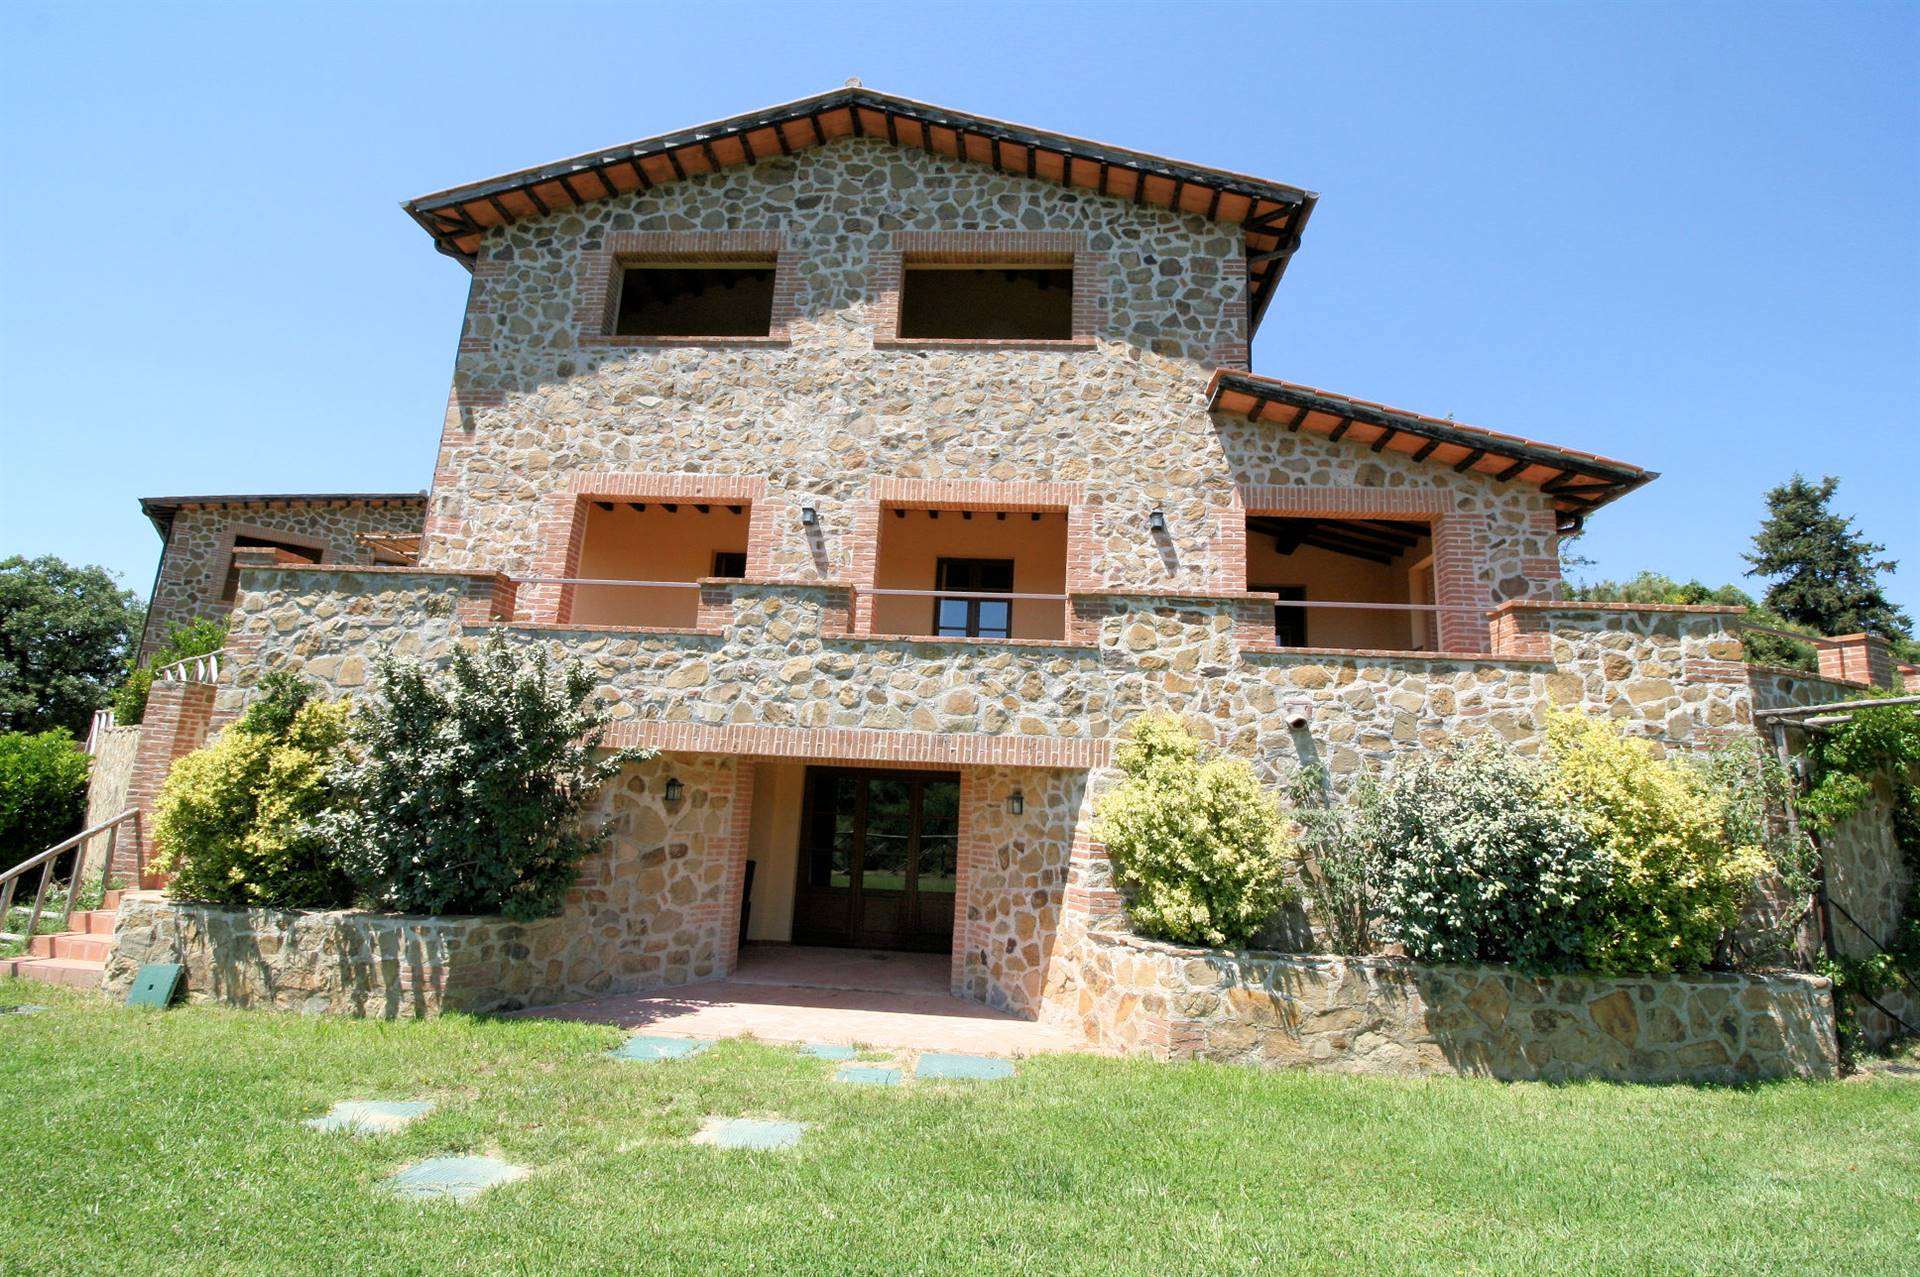 Rustico / Casale in vendita a Scansano, 4 locali, prezzo € 335.000 | PortaleAgenzieImmobiliari.it